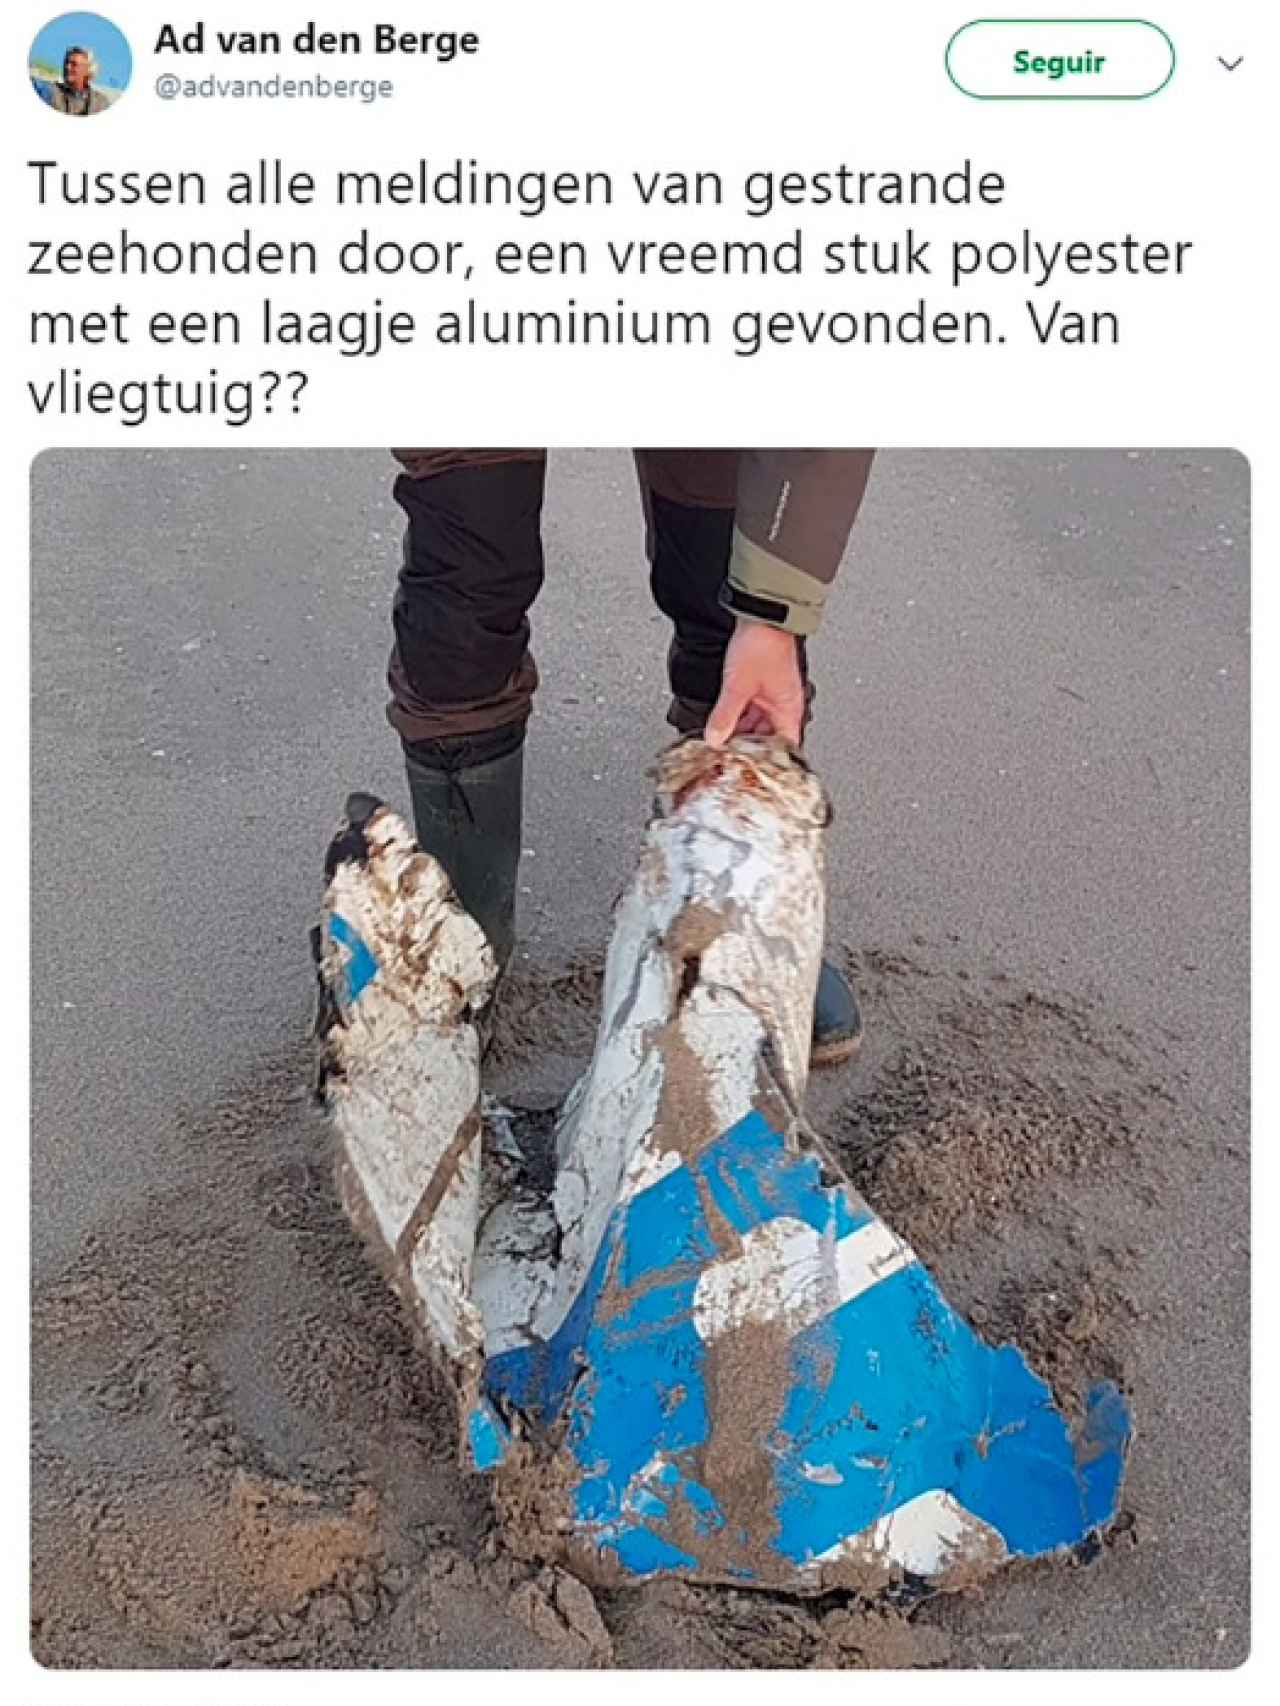 Escombros hallados en Holanda